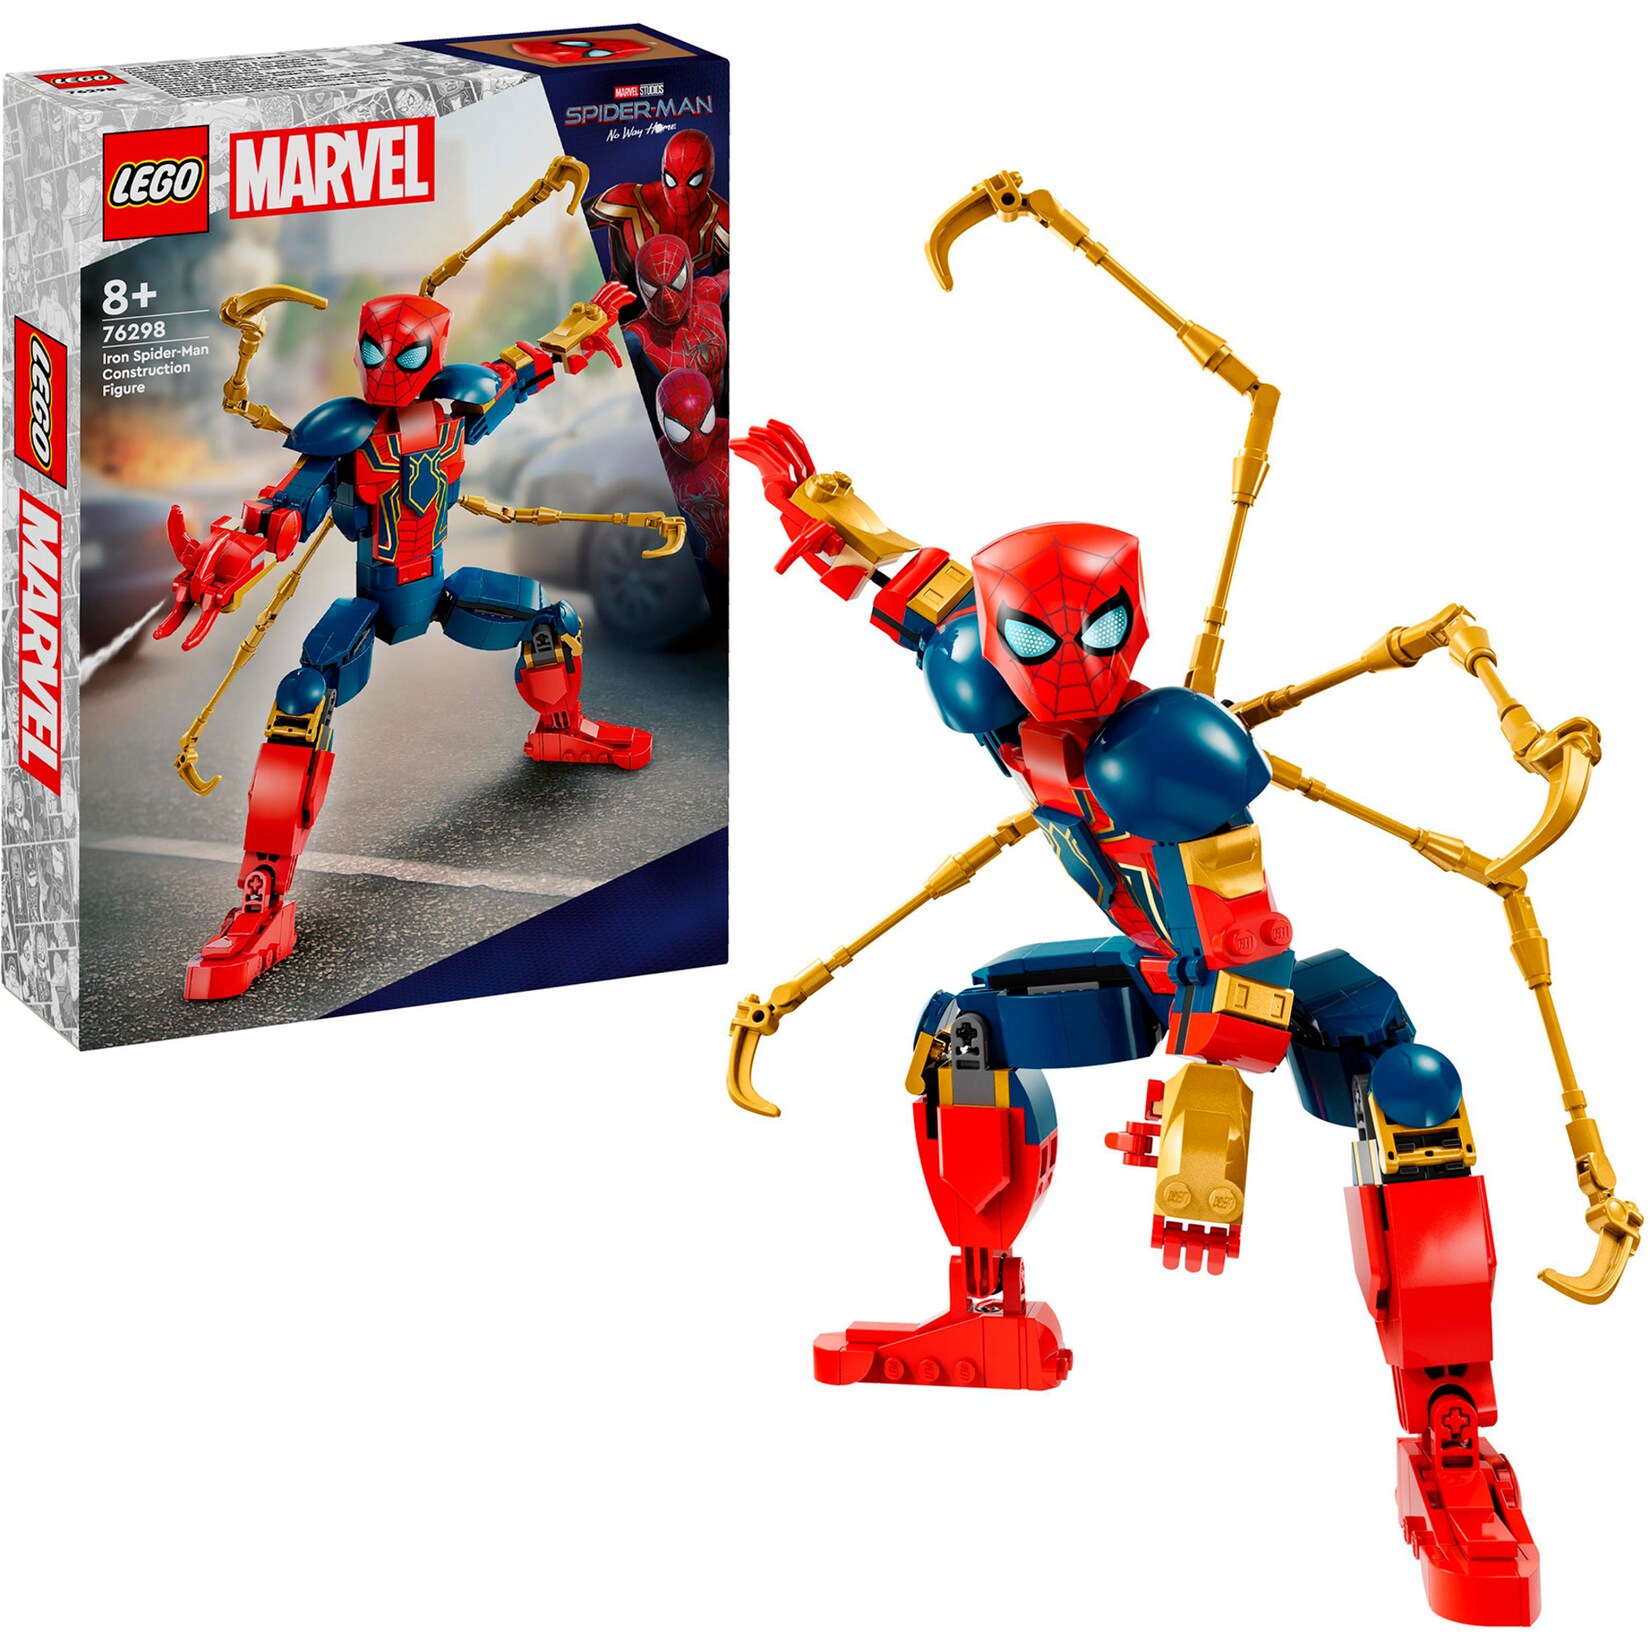 LEGO Konstruktionsspielzeug Marvel Iron Spider-Man Baufigur